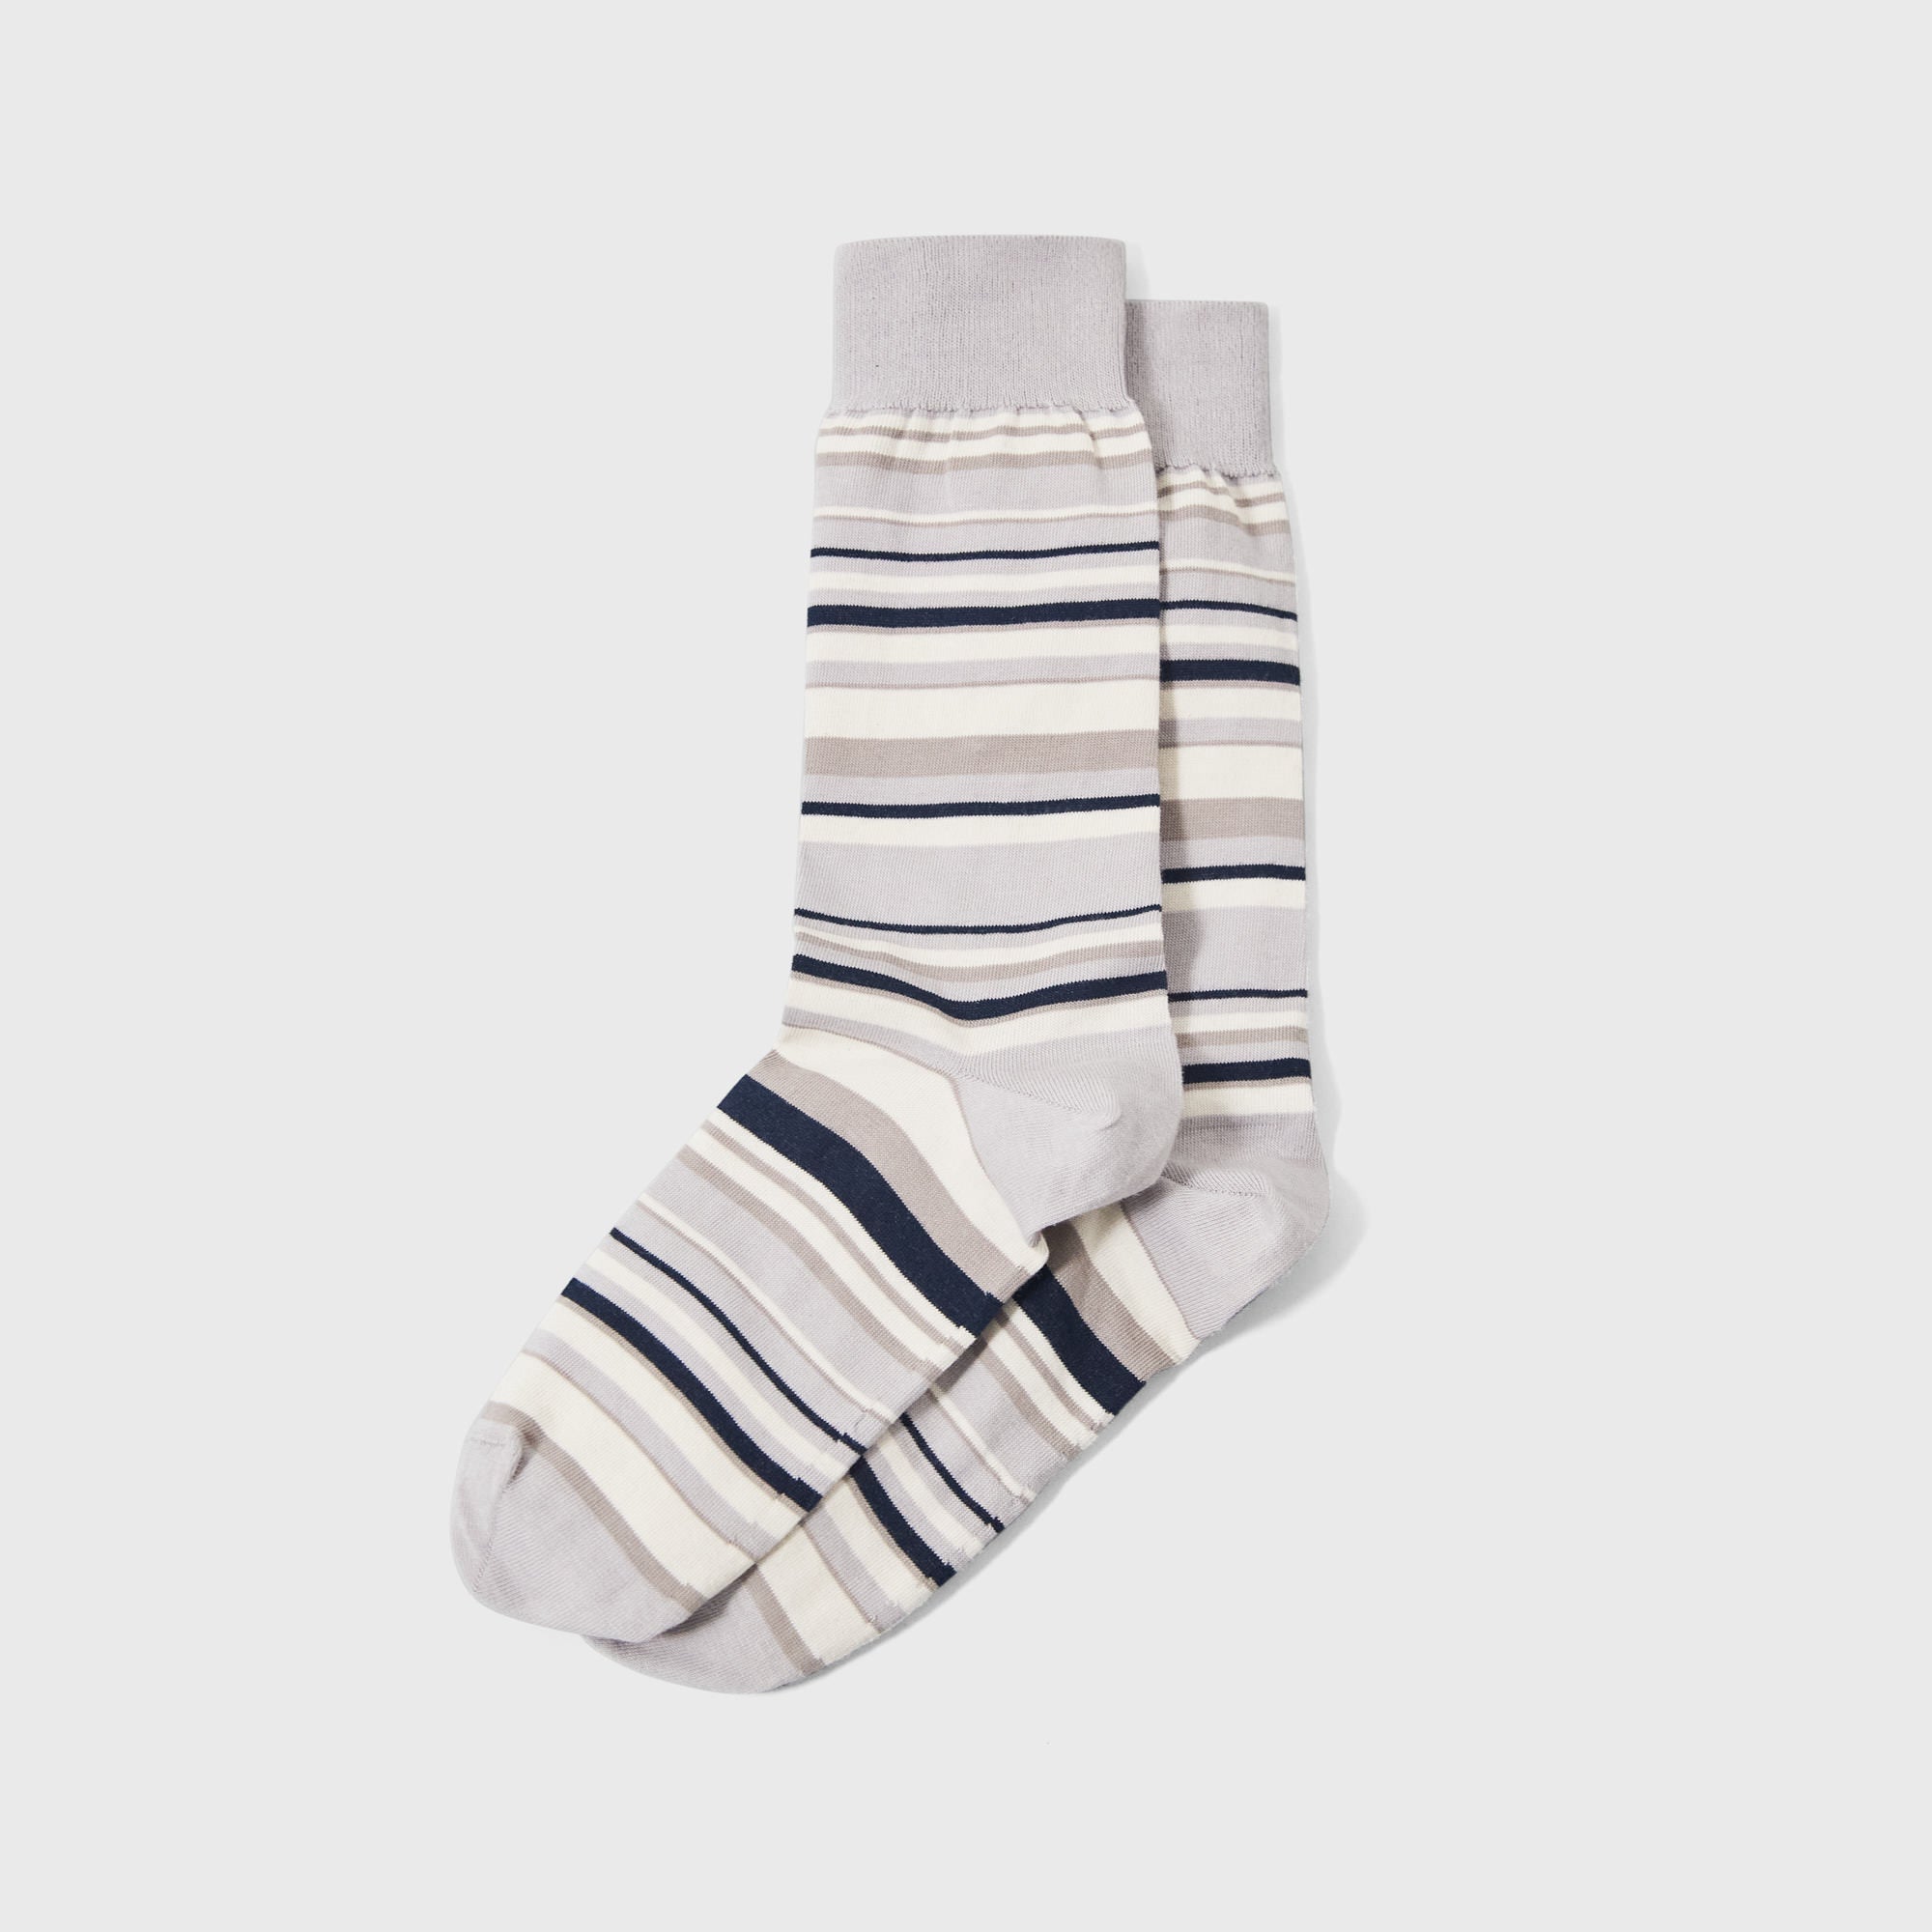 SPOKE Stripe Socks - Greys Knit Socks - SPOKE